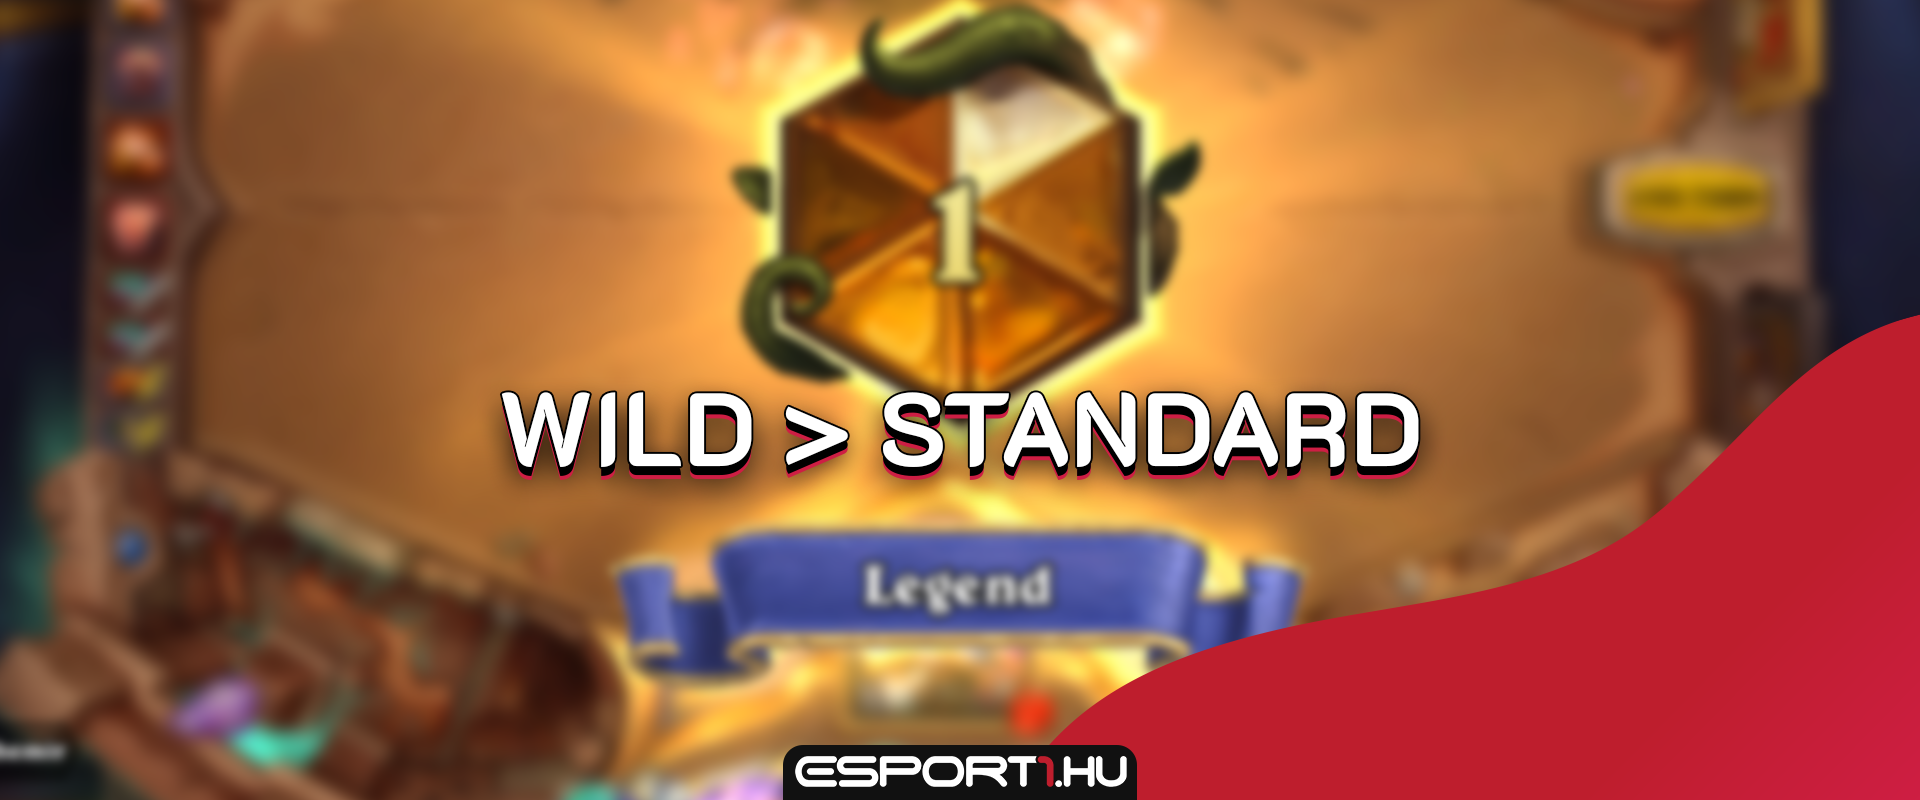 Többen érik el a Wild Legendet, mint a Standardot a kínai szerveren